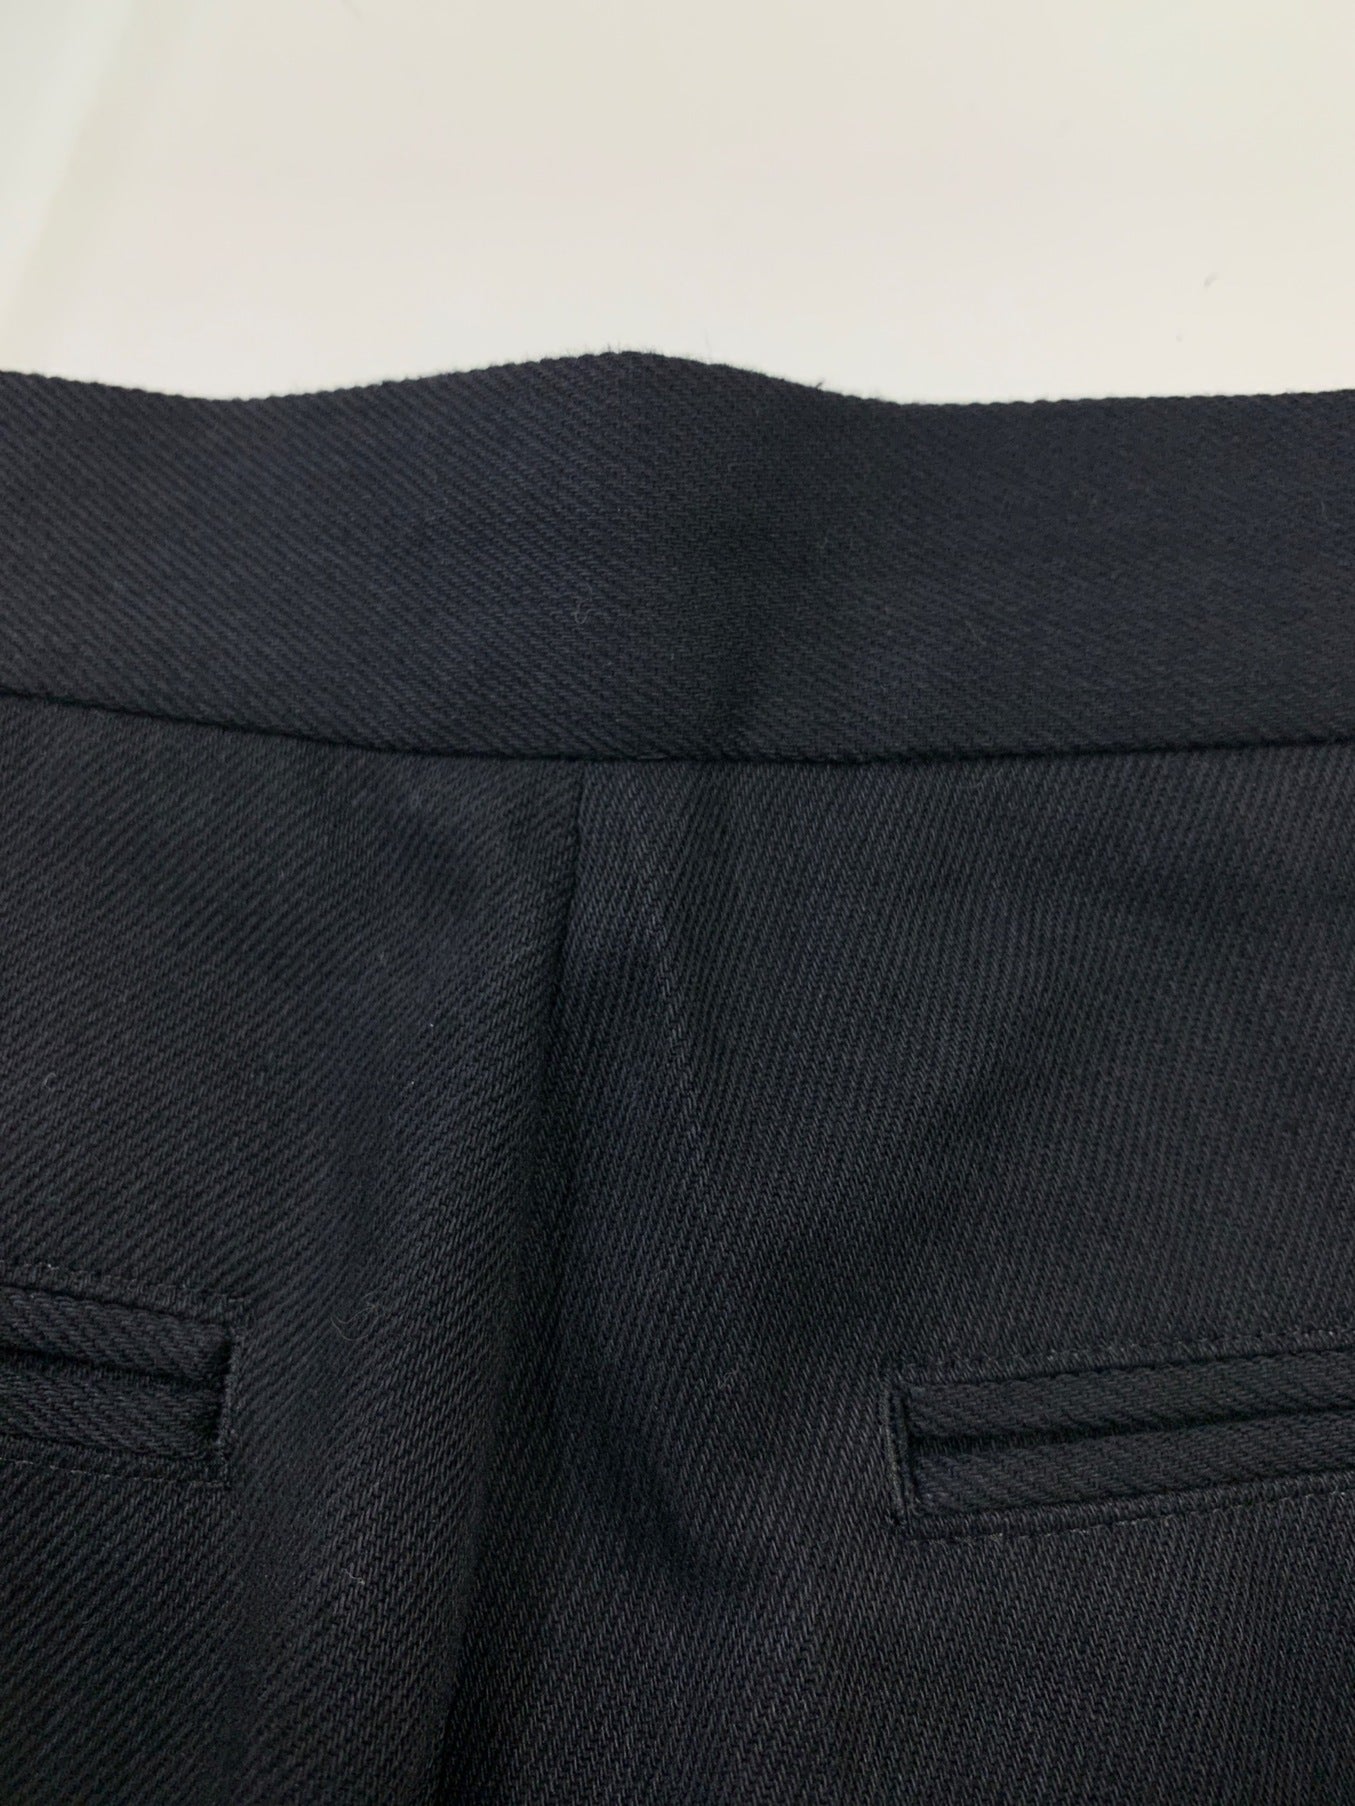 調節Yohji Yahji Yamamoto羊毛混合錐形褲子 /塞褲子FK-P56-115-1A